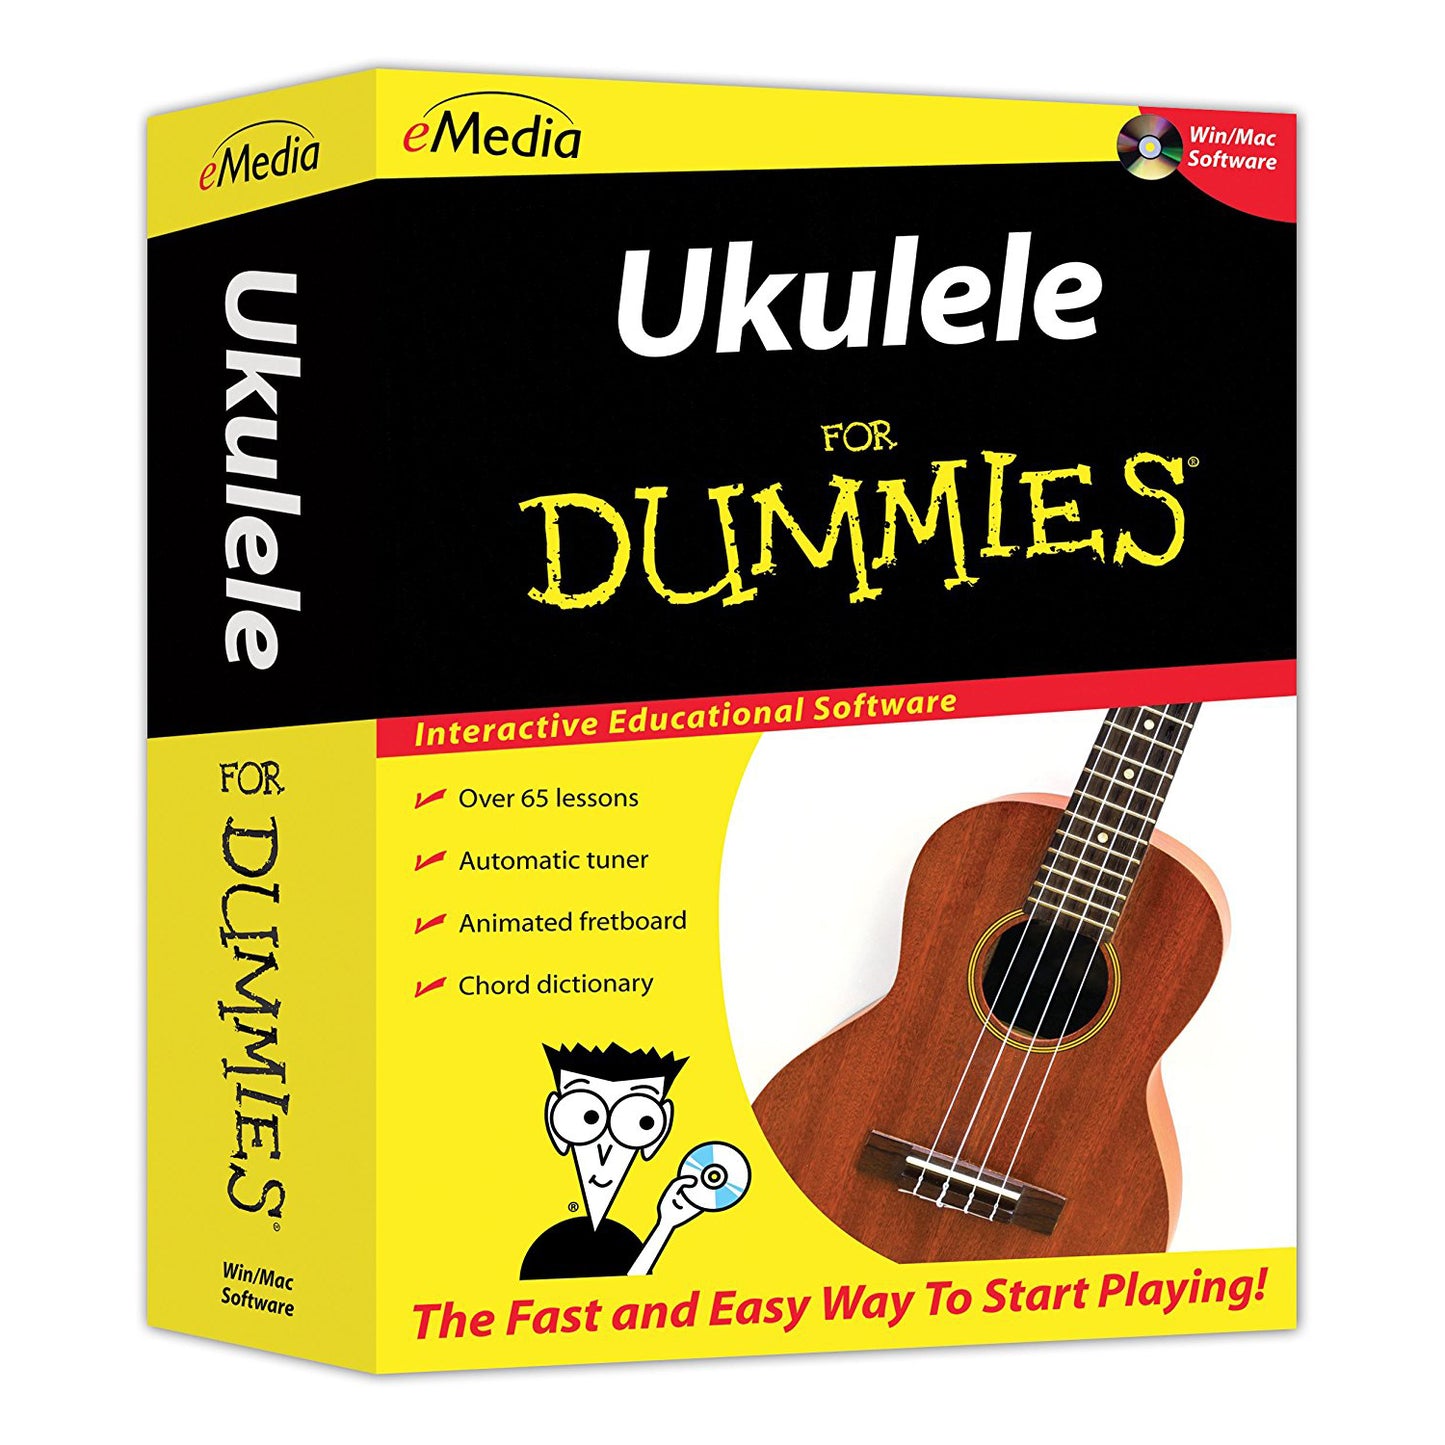 eMedia Ukulele for Dummies - Macintosh (UKULELEDUM)